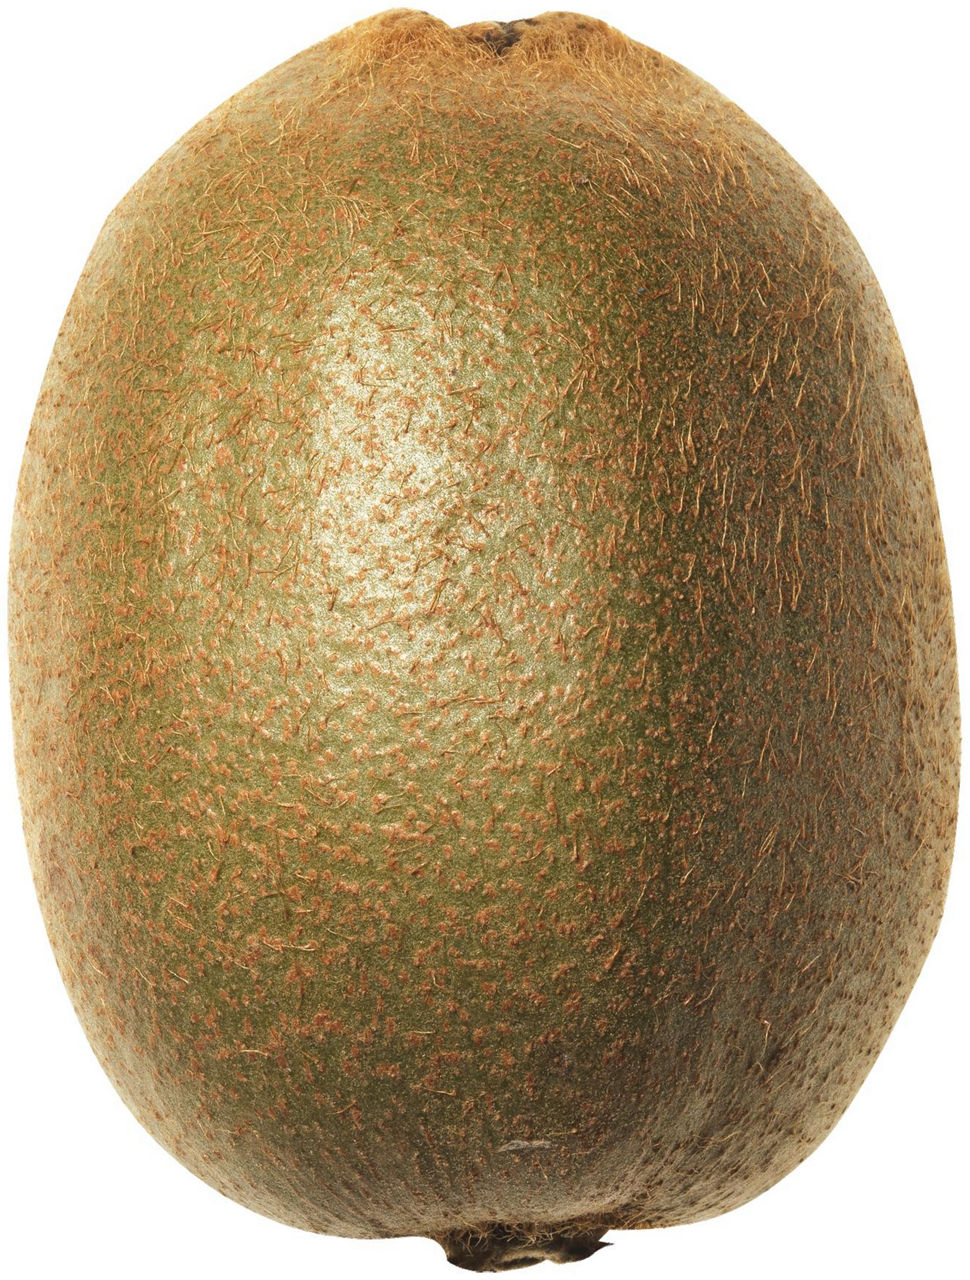 Bio kiwi hayward g500